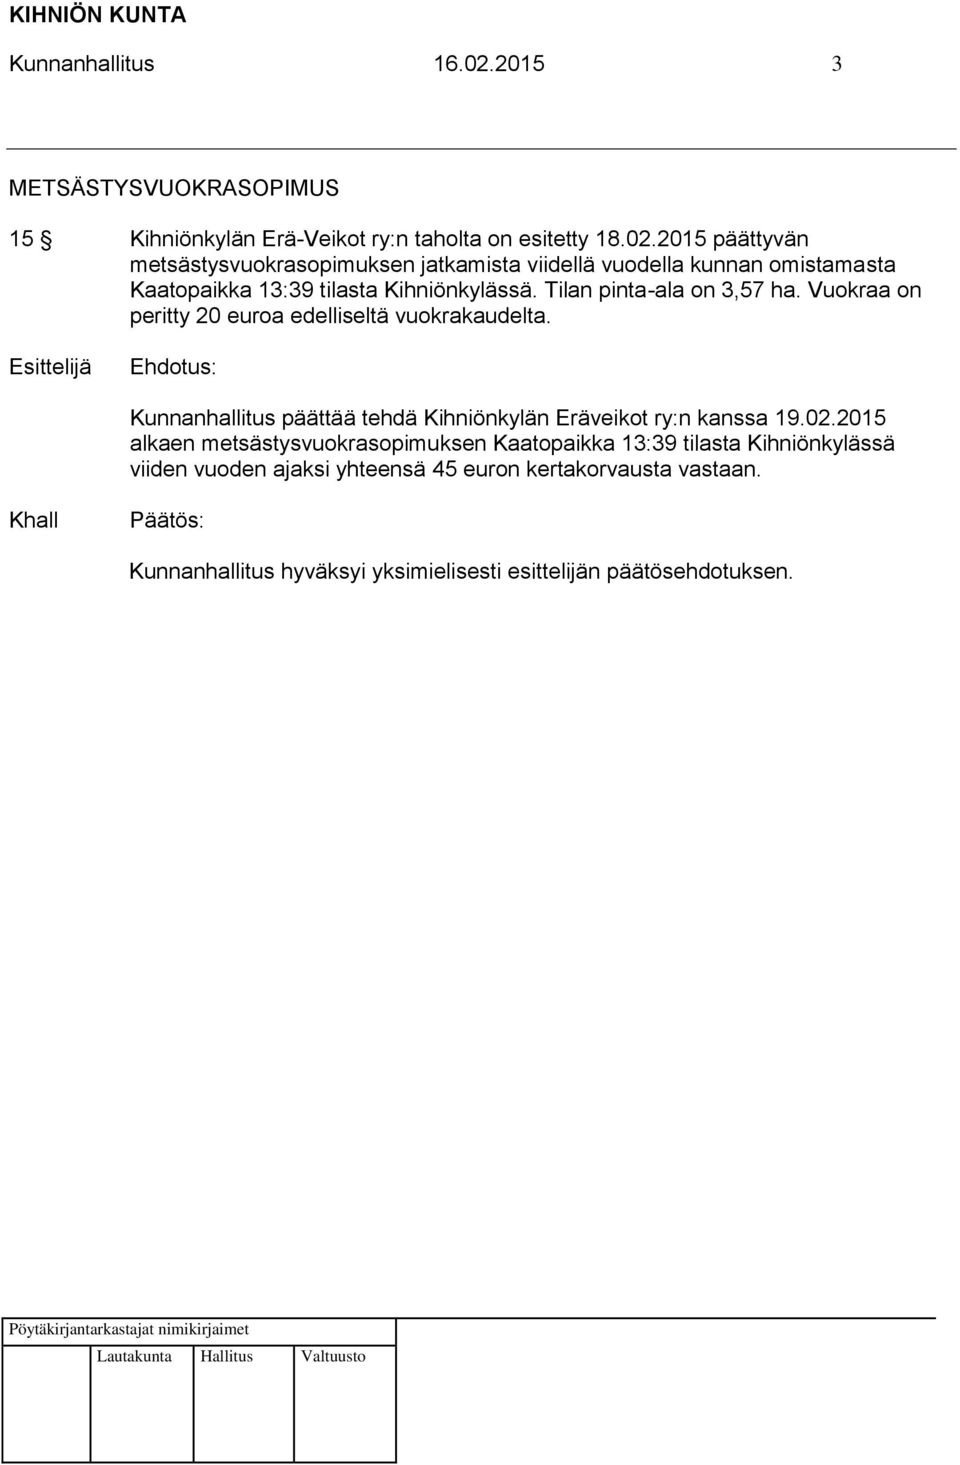 02.2015 alkaen metsästysvuokrasopimuksen Kaatopaikka 13:39 tilasta Kihniönkylässä viiden vuoden ajaksi yhteensä 45 euron kertakorvausta vastaan.